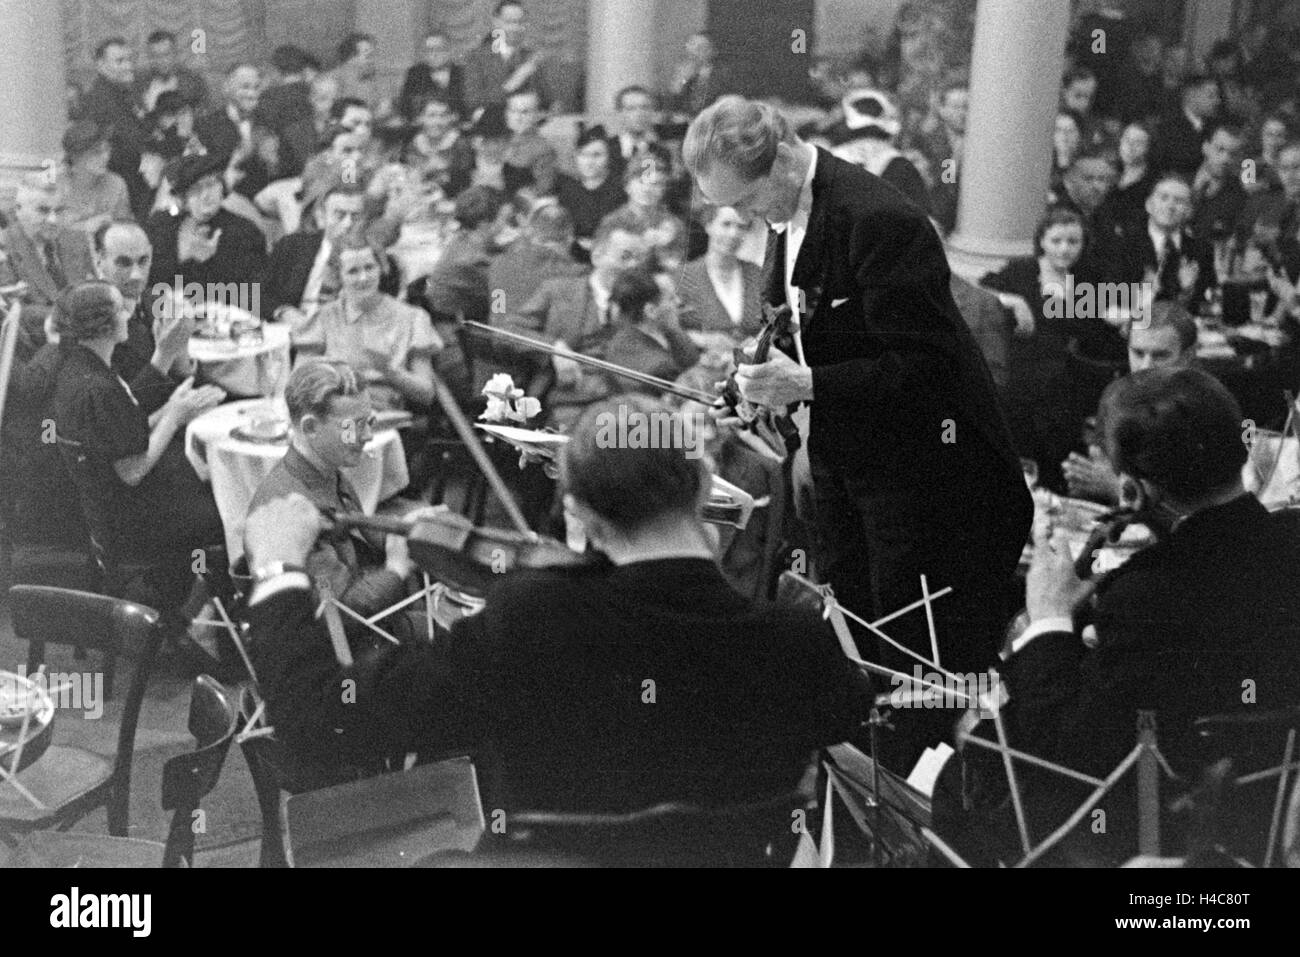 Der violinista und Orchesterleiter Barnaba von Geczy bei einem Konzert, Deutschland 1930er Jahre. Violinista e leader di orchestra Barnaba von Geczy eseguendo, Germania 1930 Foto Stock